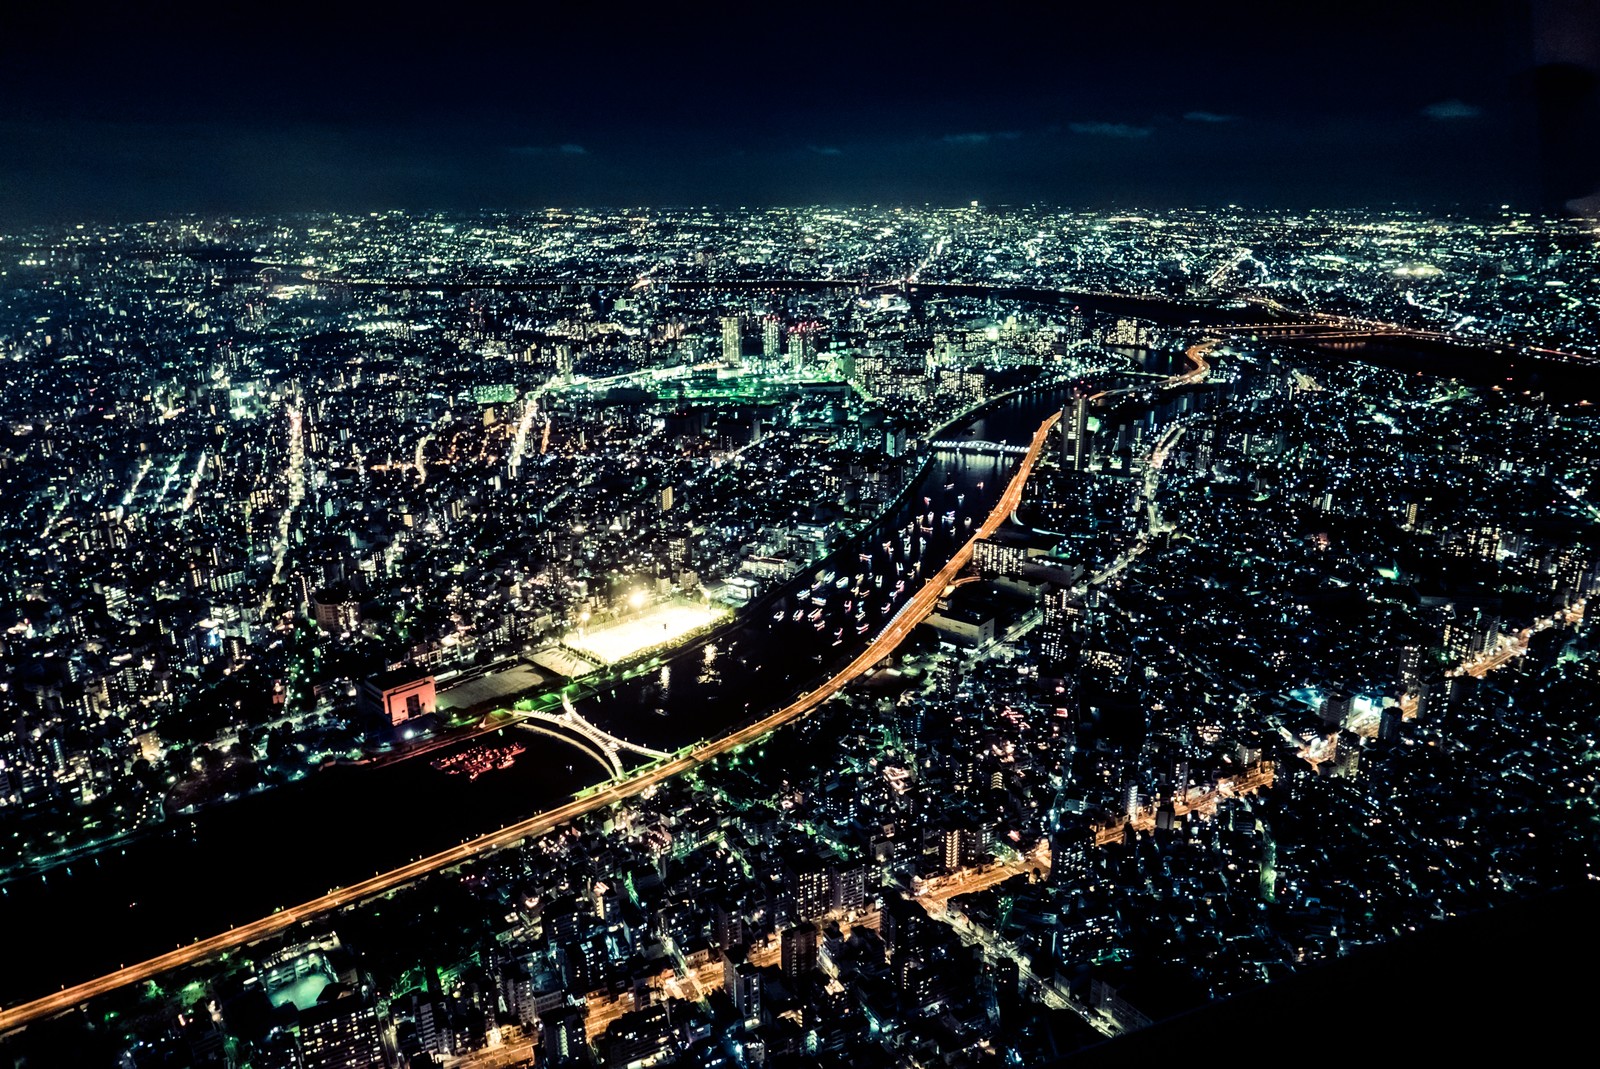 ヘリコプターに乗ってみた キラキラ絶景 空から東京湾の夜景を一望 グッジョイ Goodjoy